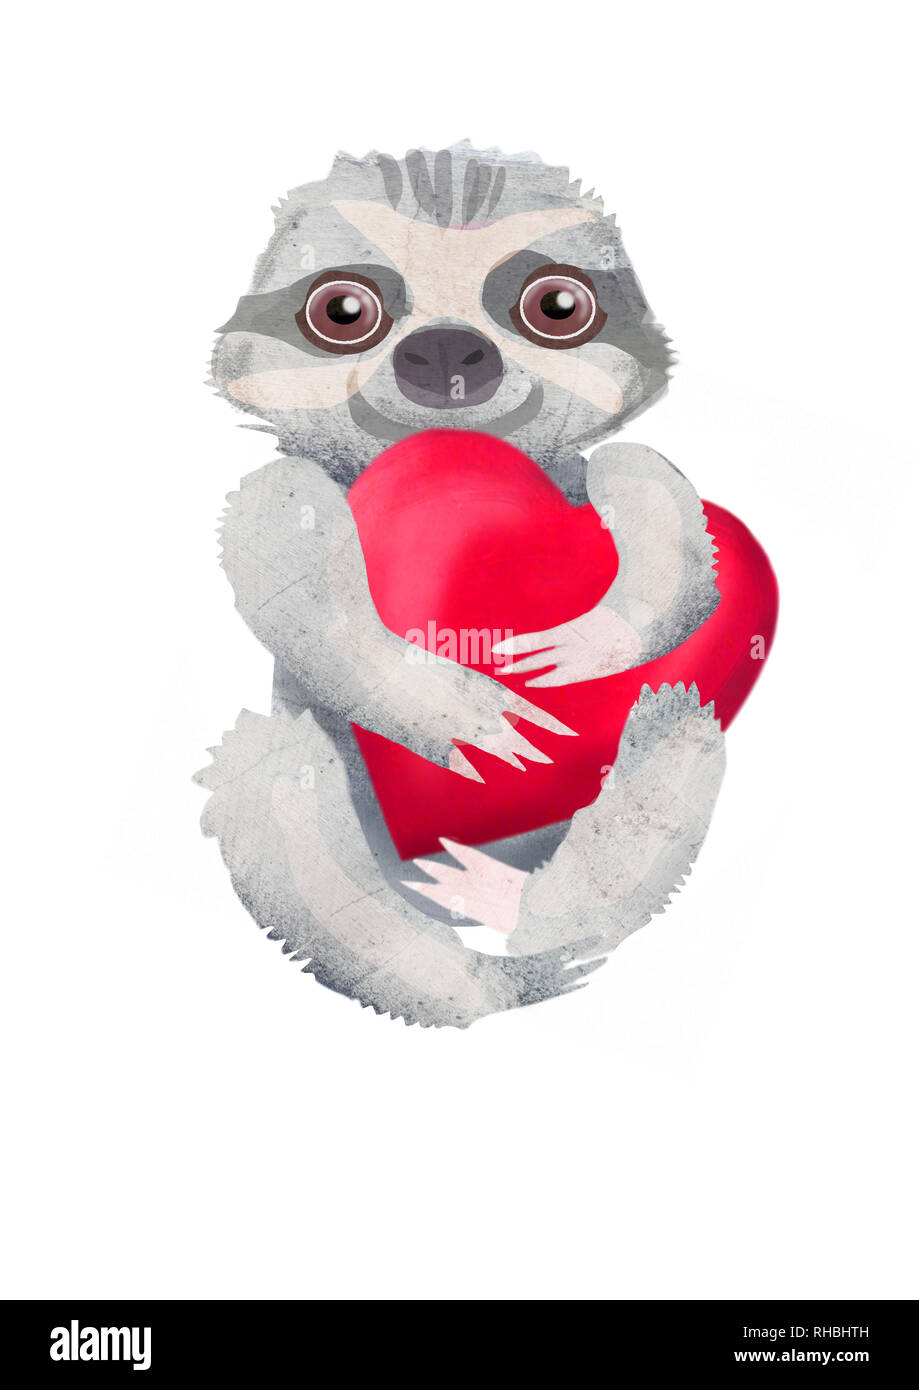 Folivora. Drei-Sitzung toed sloth Tier mit roten Herzen. Hand Zeichnung Cartoon Illustration auf weißen Hintergrund isoliert. Happy Valentines Tag Karte. Stockfoto